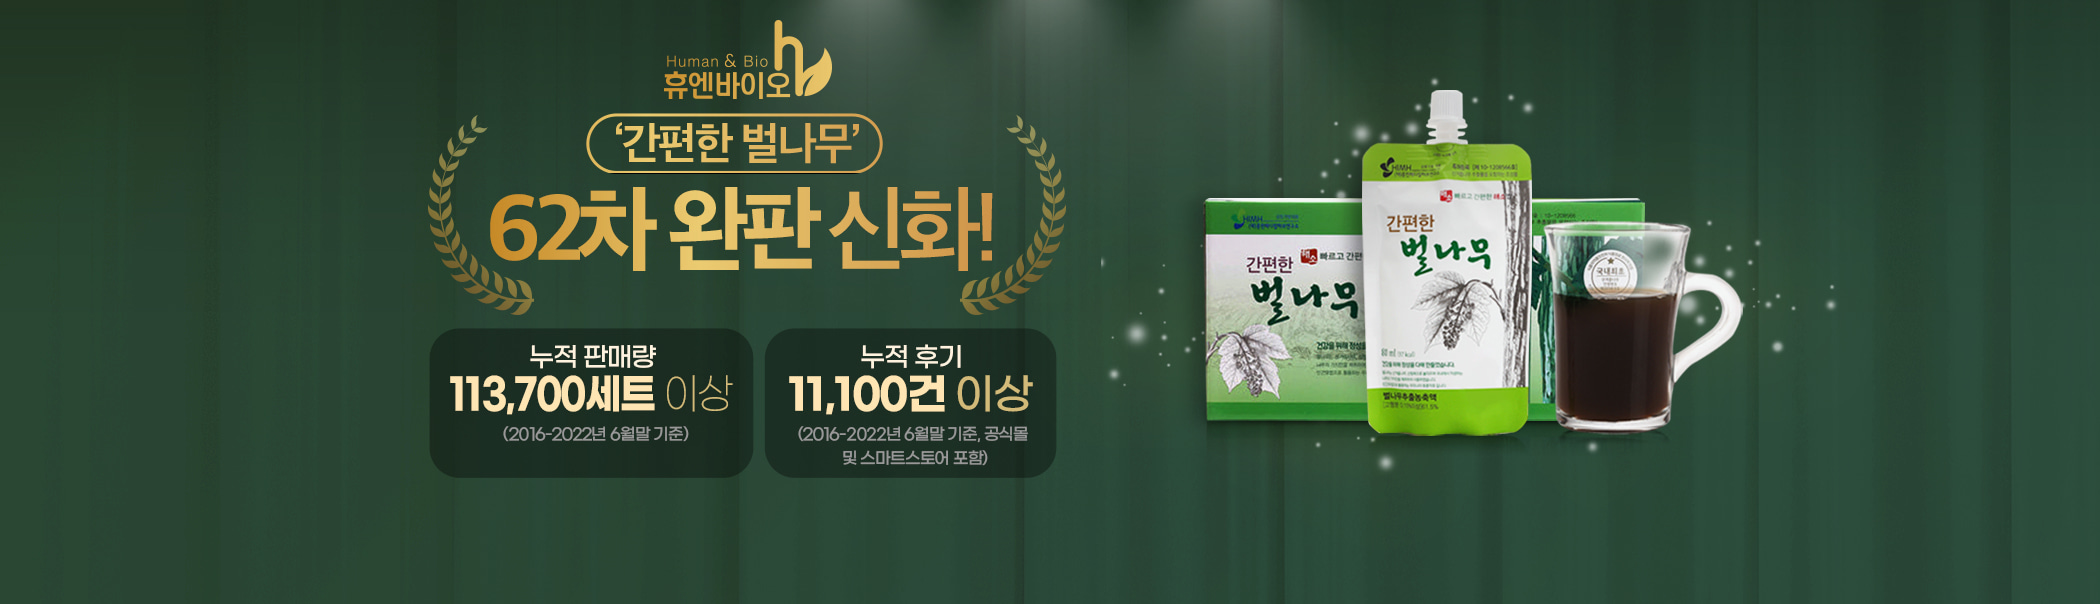 한국소비자 선호도 1위 브랜드 대상